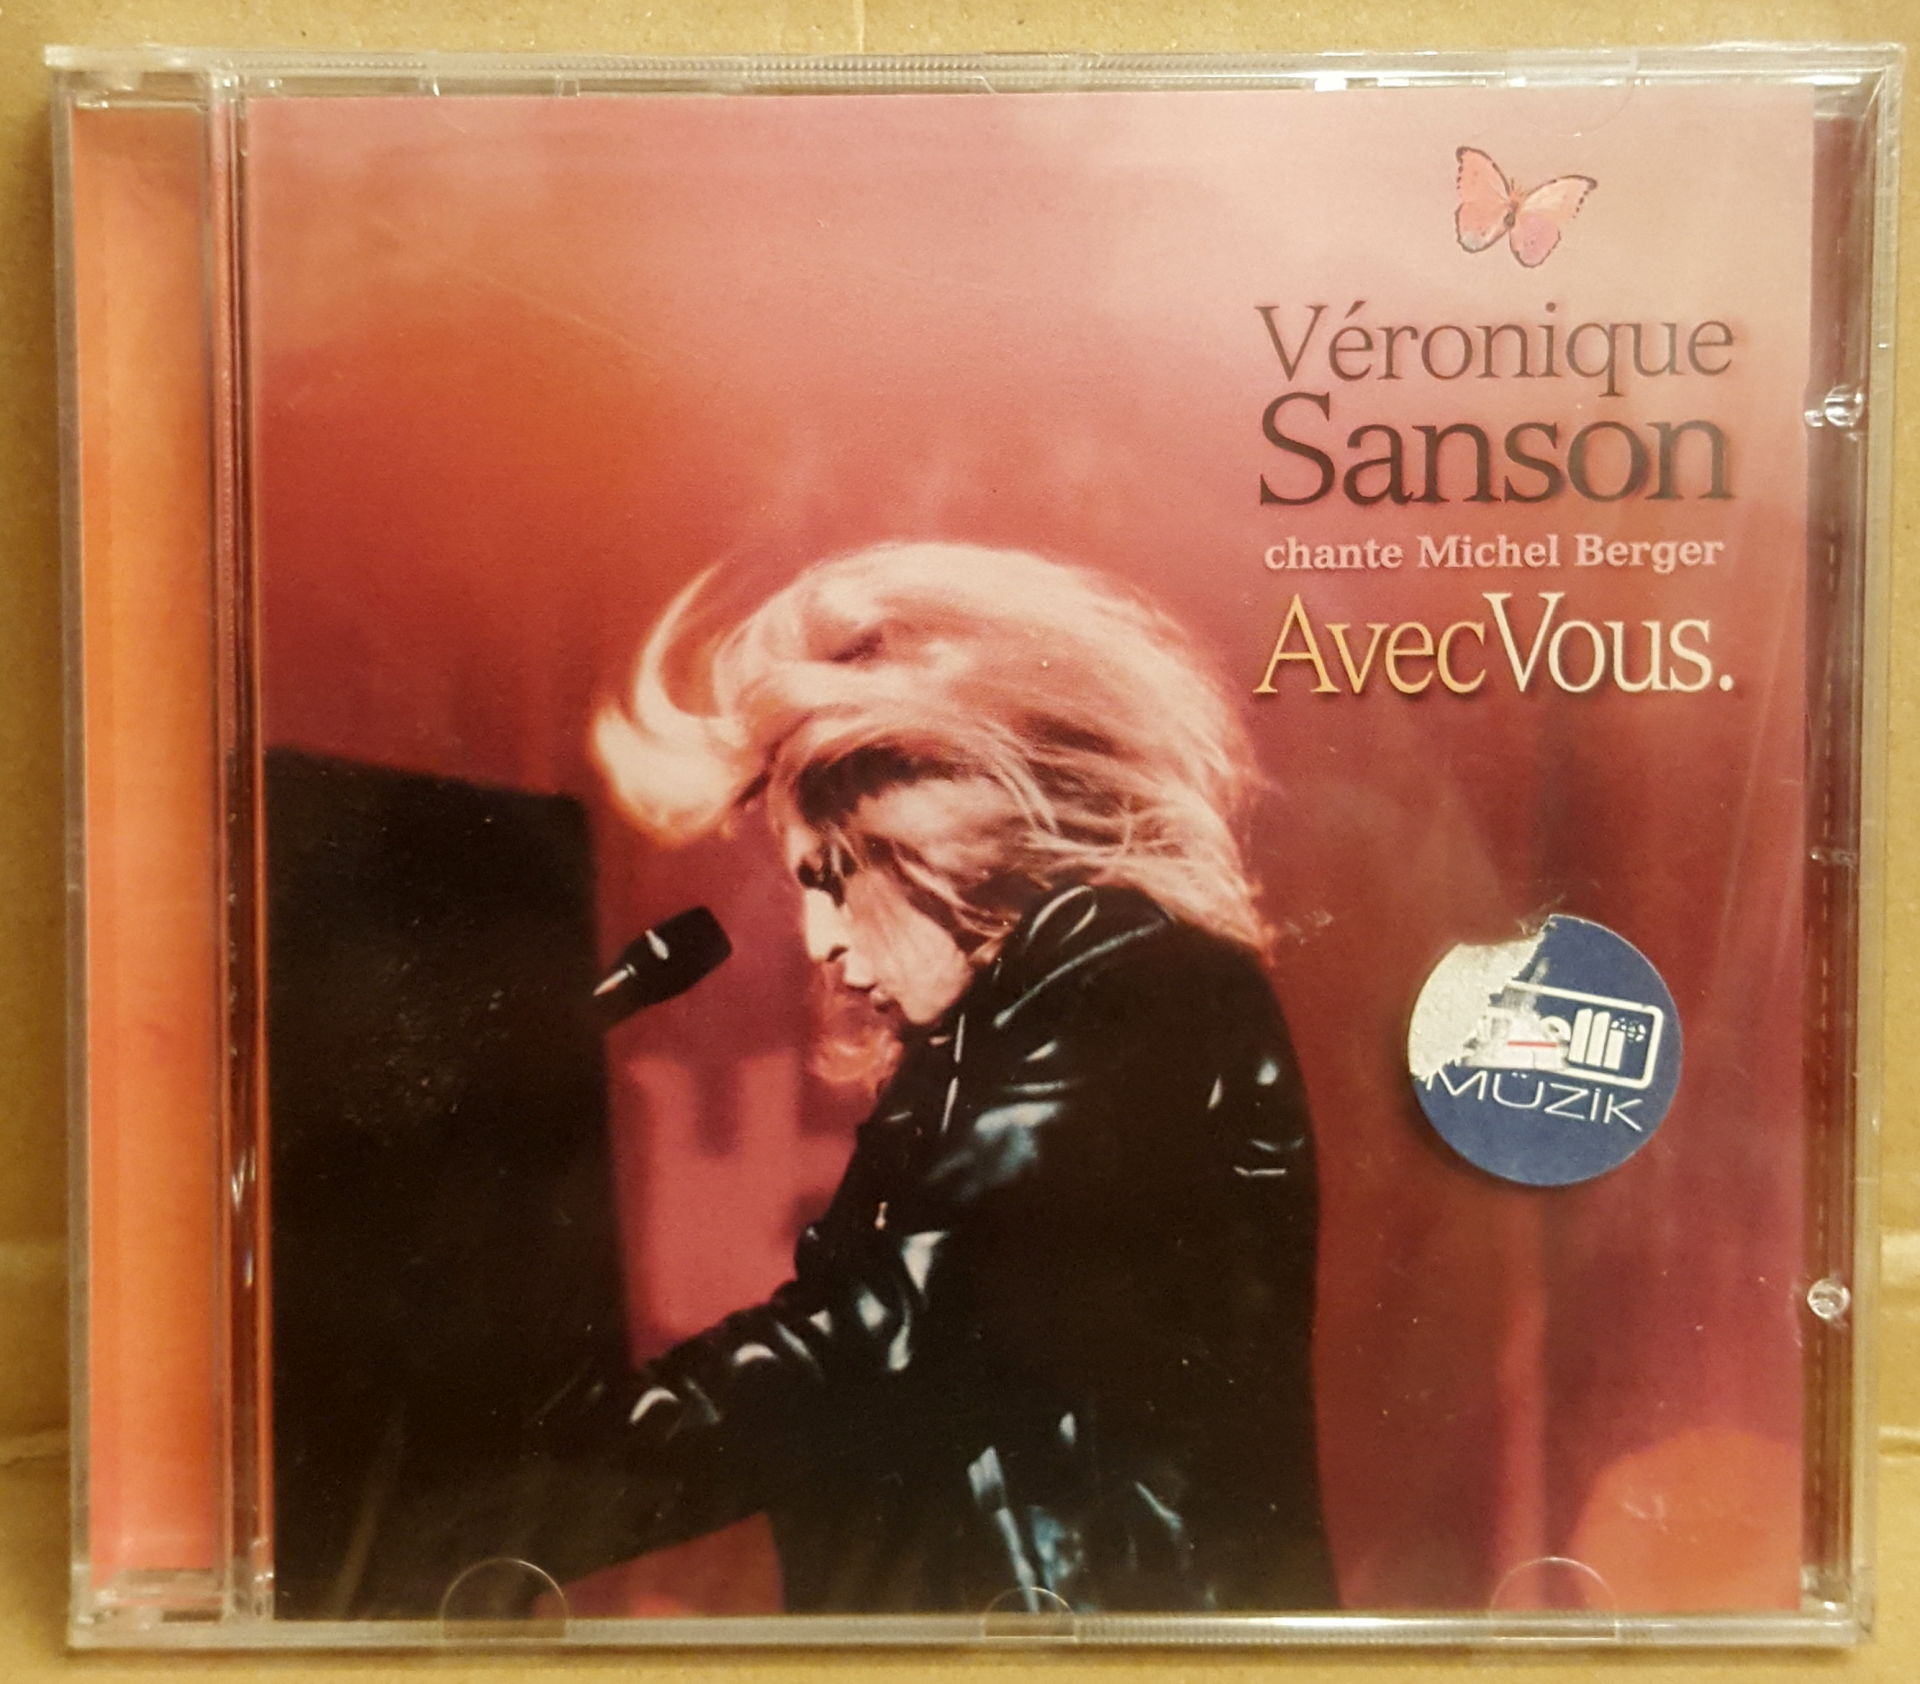 VERONIQUE SANSON - AVEC VOUS / LIVE (2000) - CD FRENCH POP CHANSON 2.EL